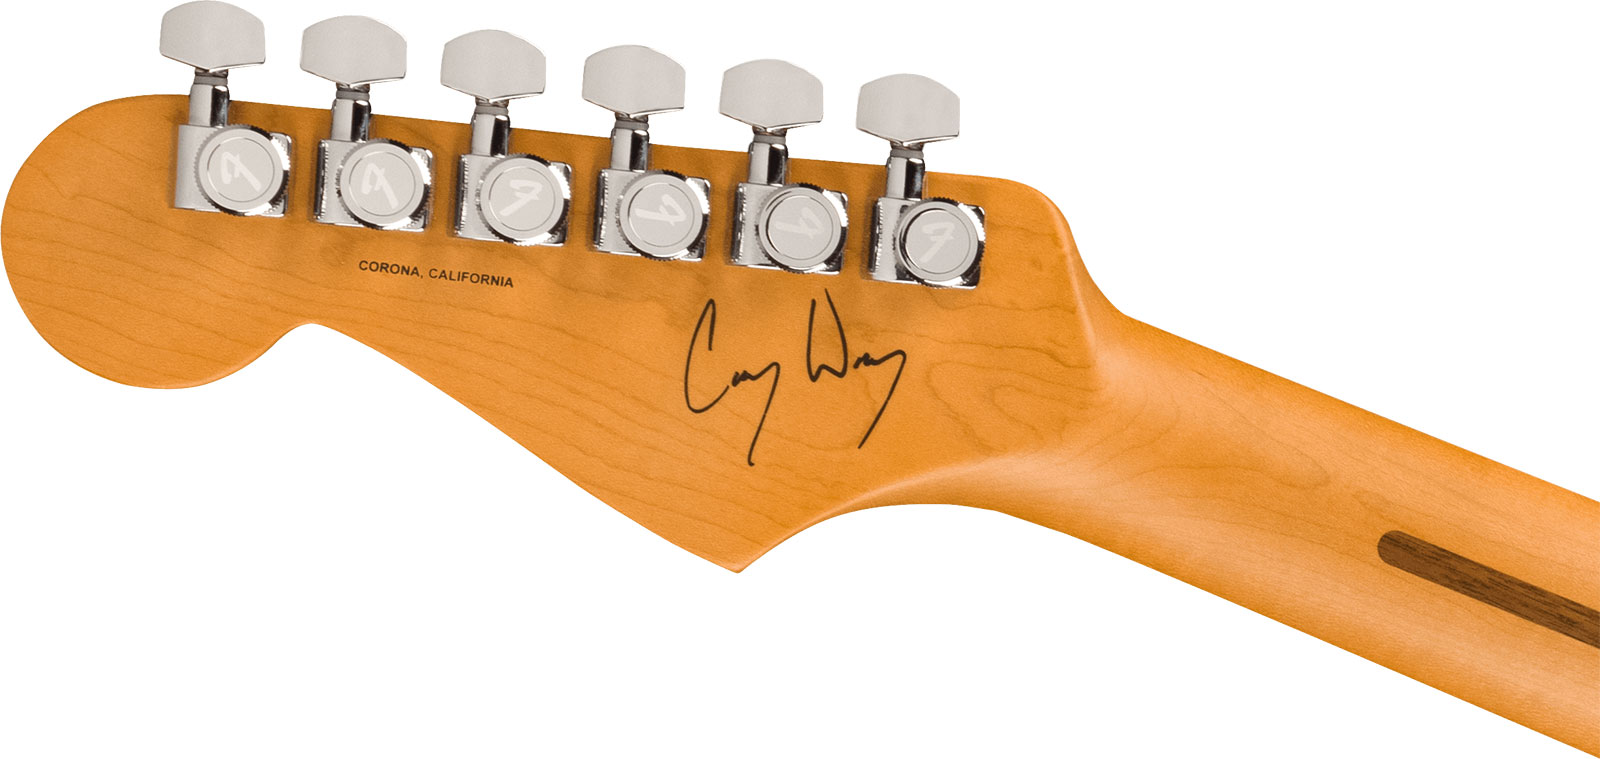 Fender Cory Wong Strat Ltd Signature Usa Stss Trem Rw - Daphne Blue - Guitare Électrique Forme Str - Variation 3